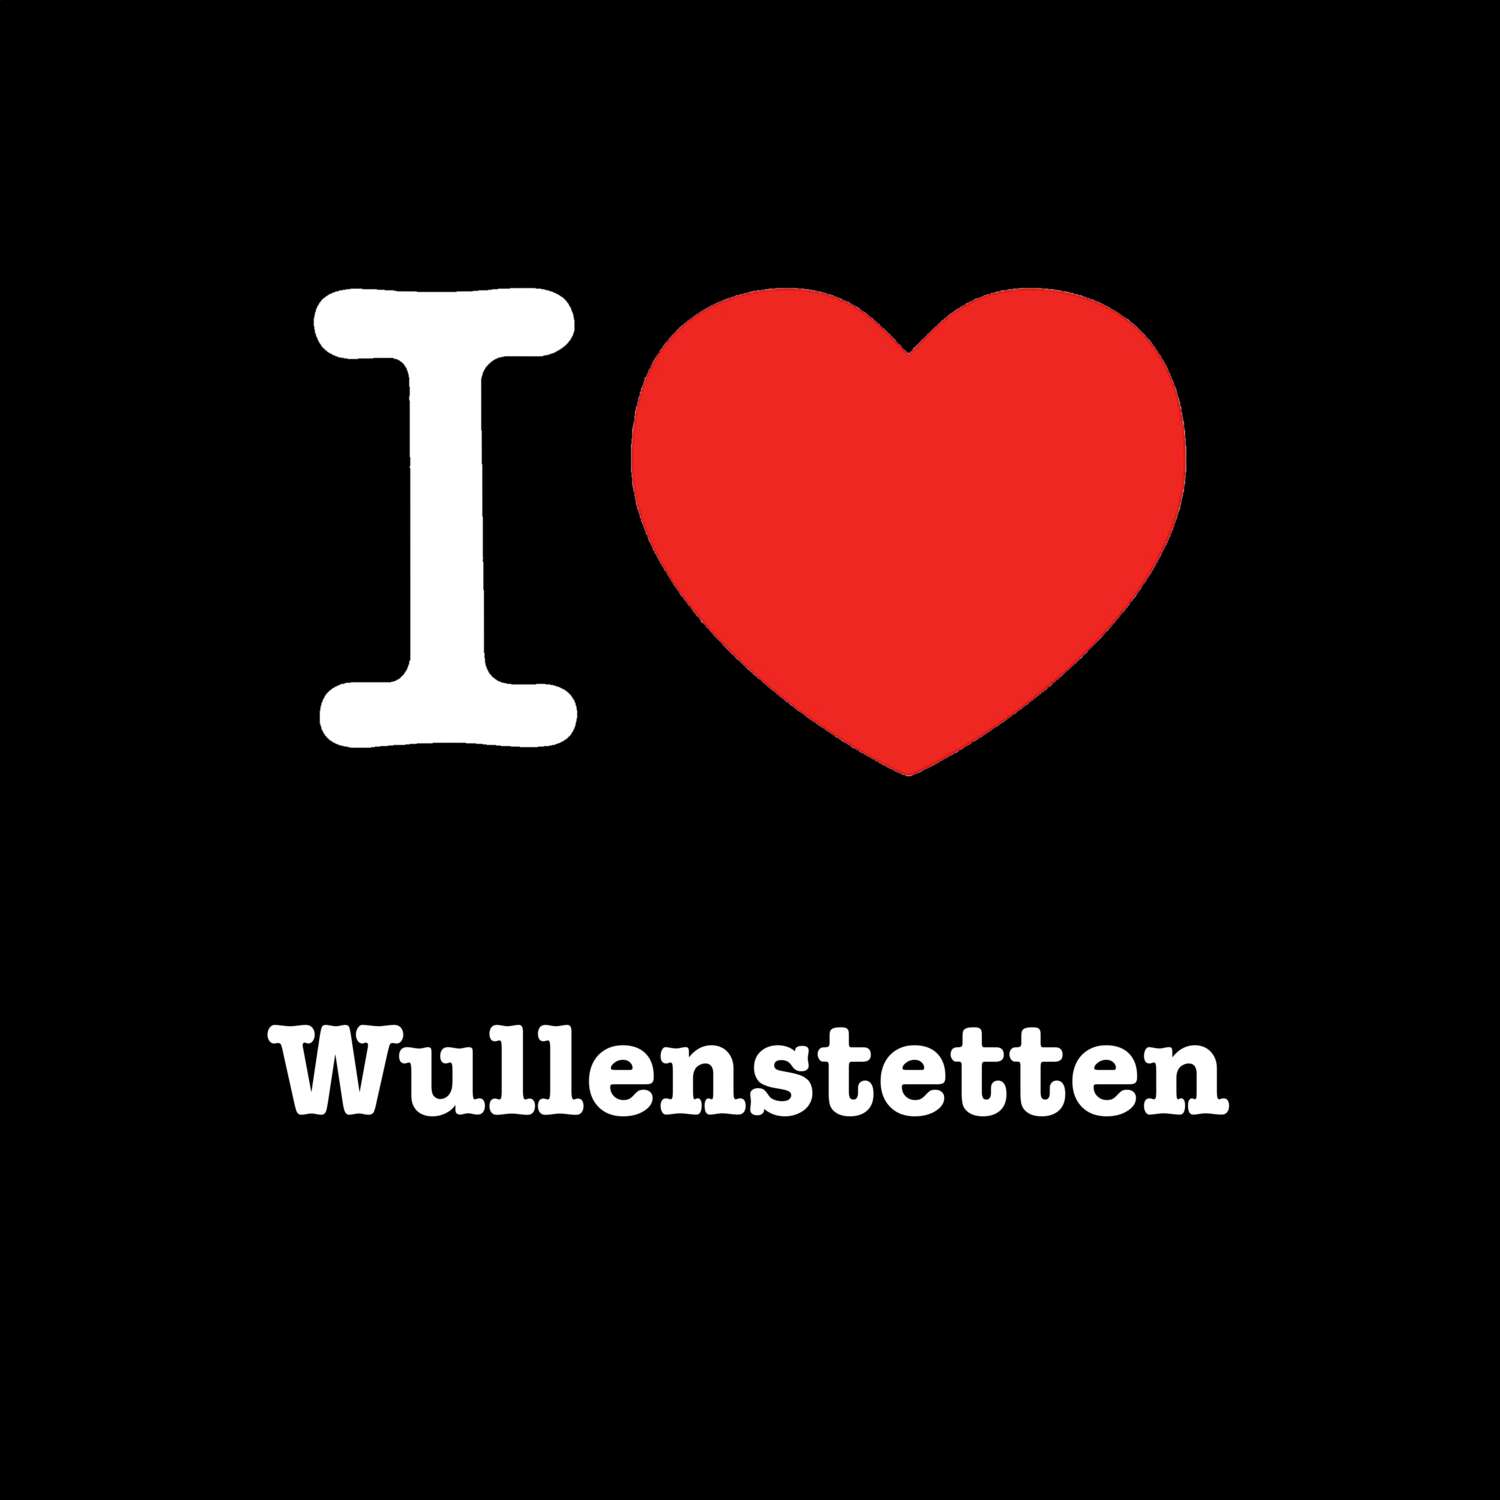 Wullenstetten T-Shirt »I love«